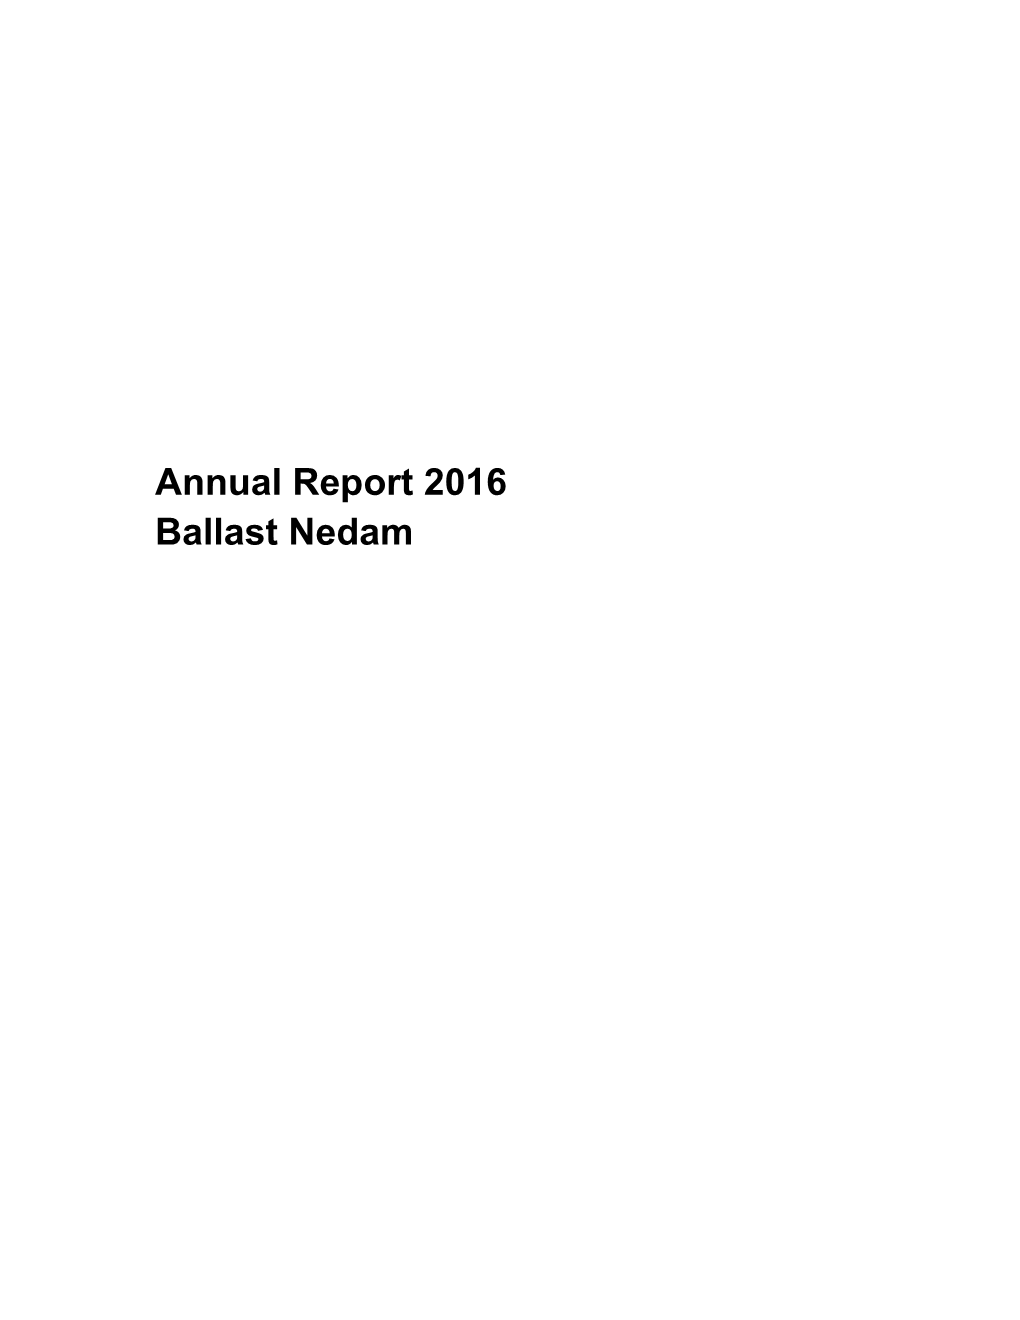 Annual Report 2016 Ballast Nedam